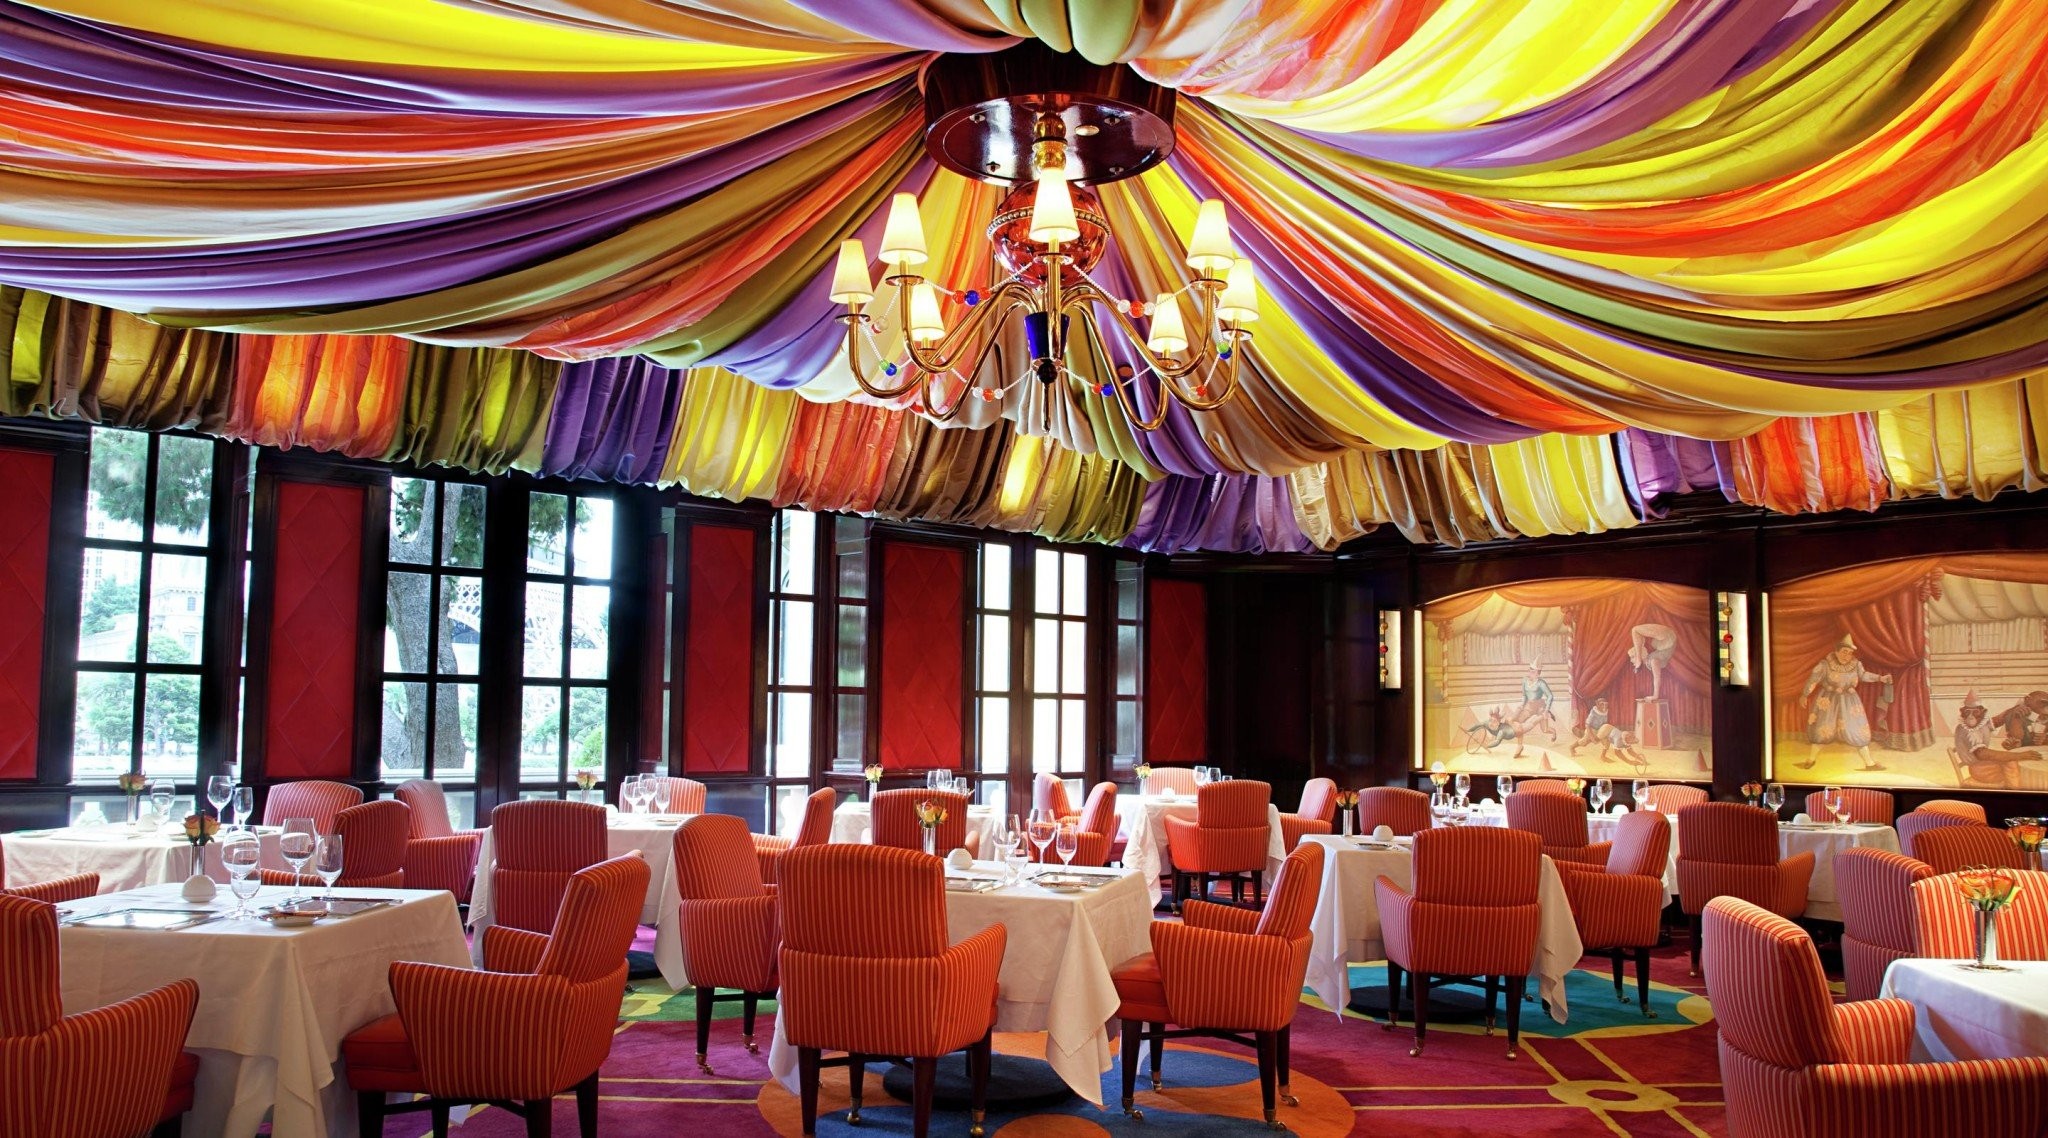 bellagio-le-cirque-dining-room.jpg